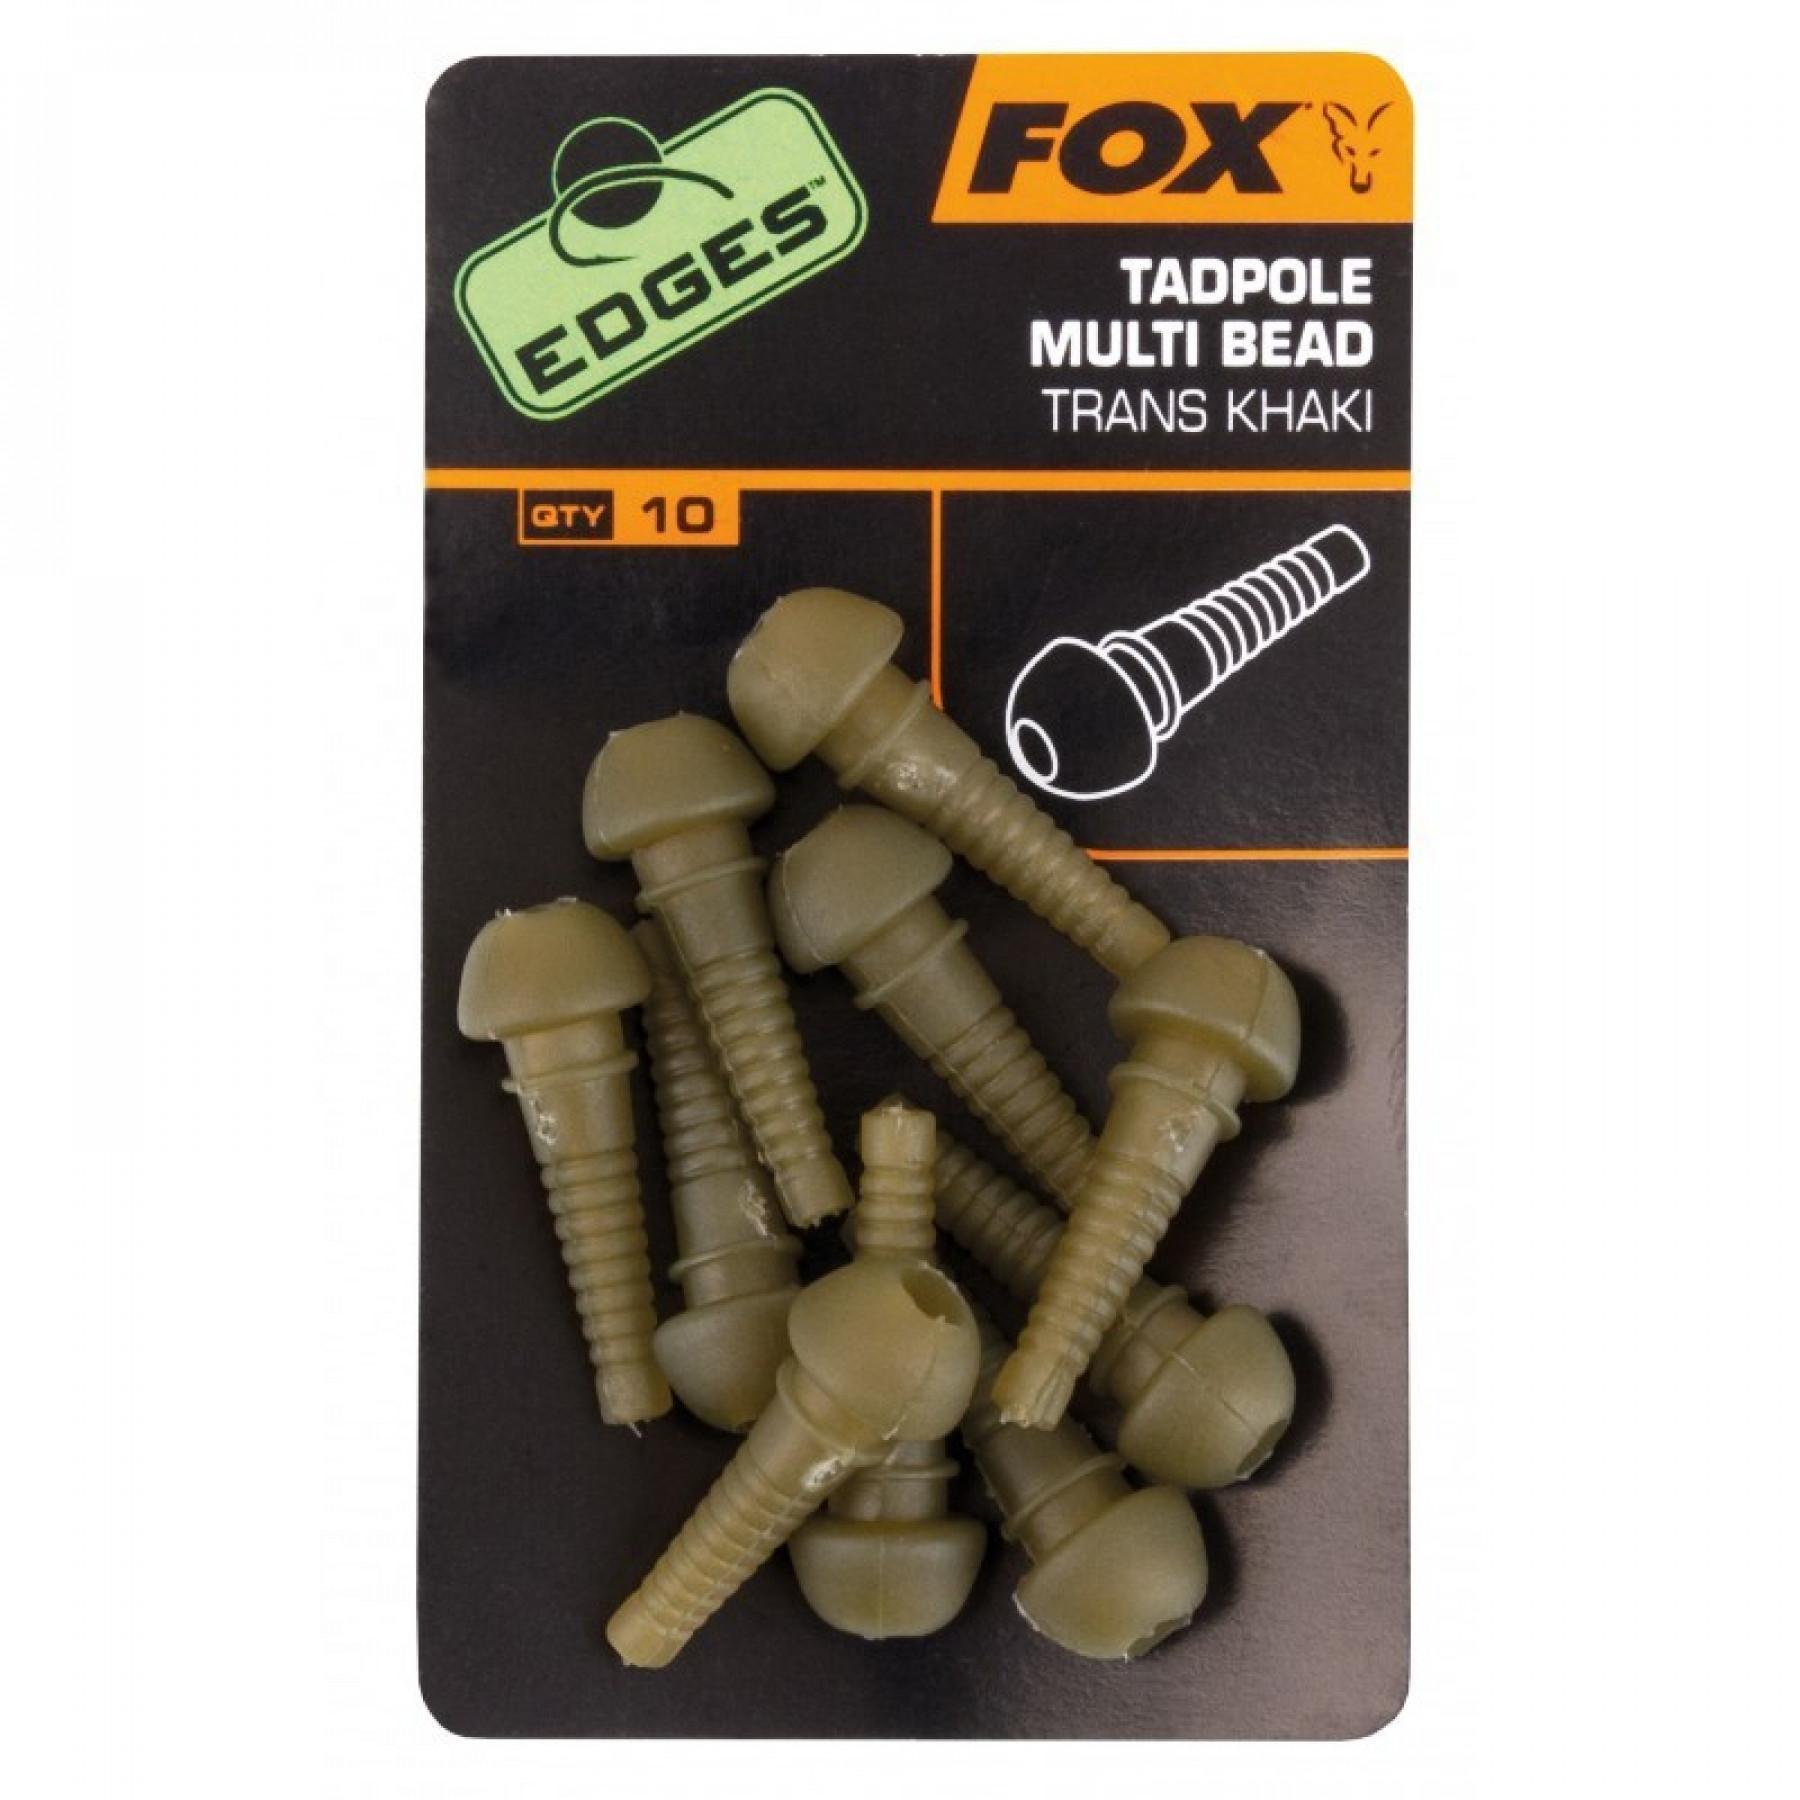 Manga Fox tadpole multi bead